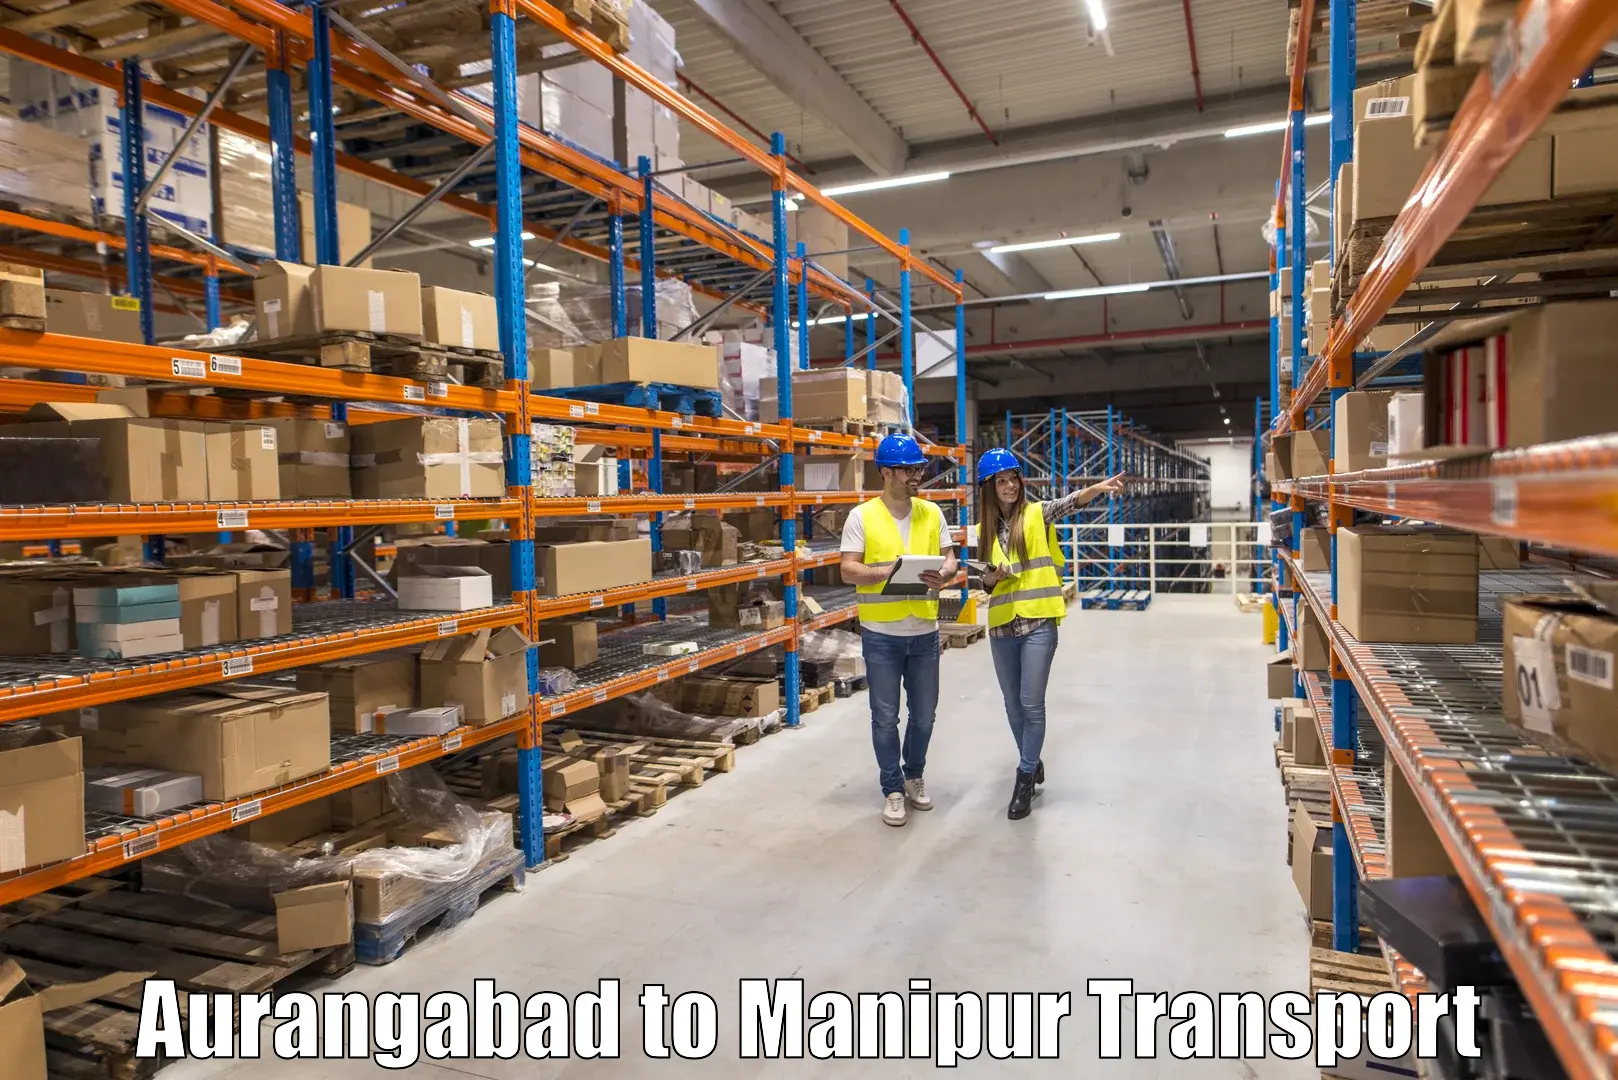 Road transport online services Aurangabad to Chandel